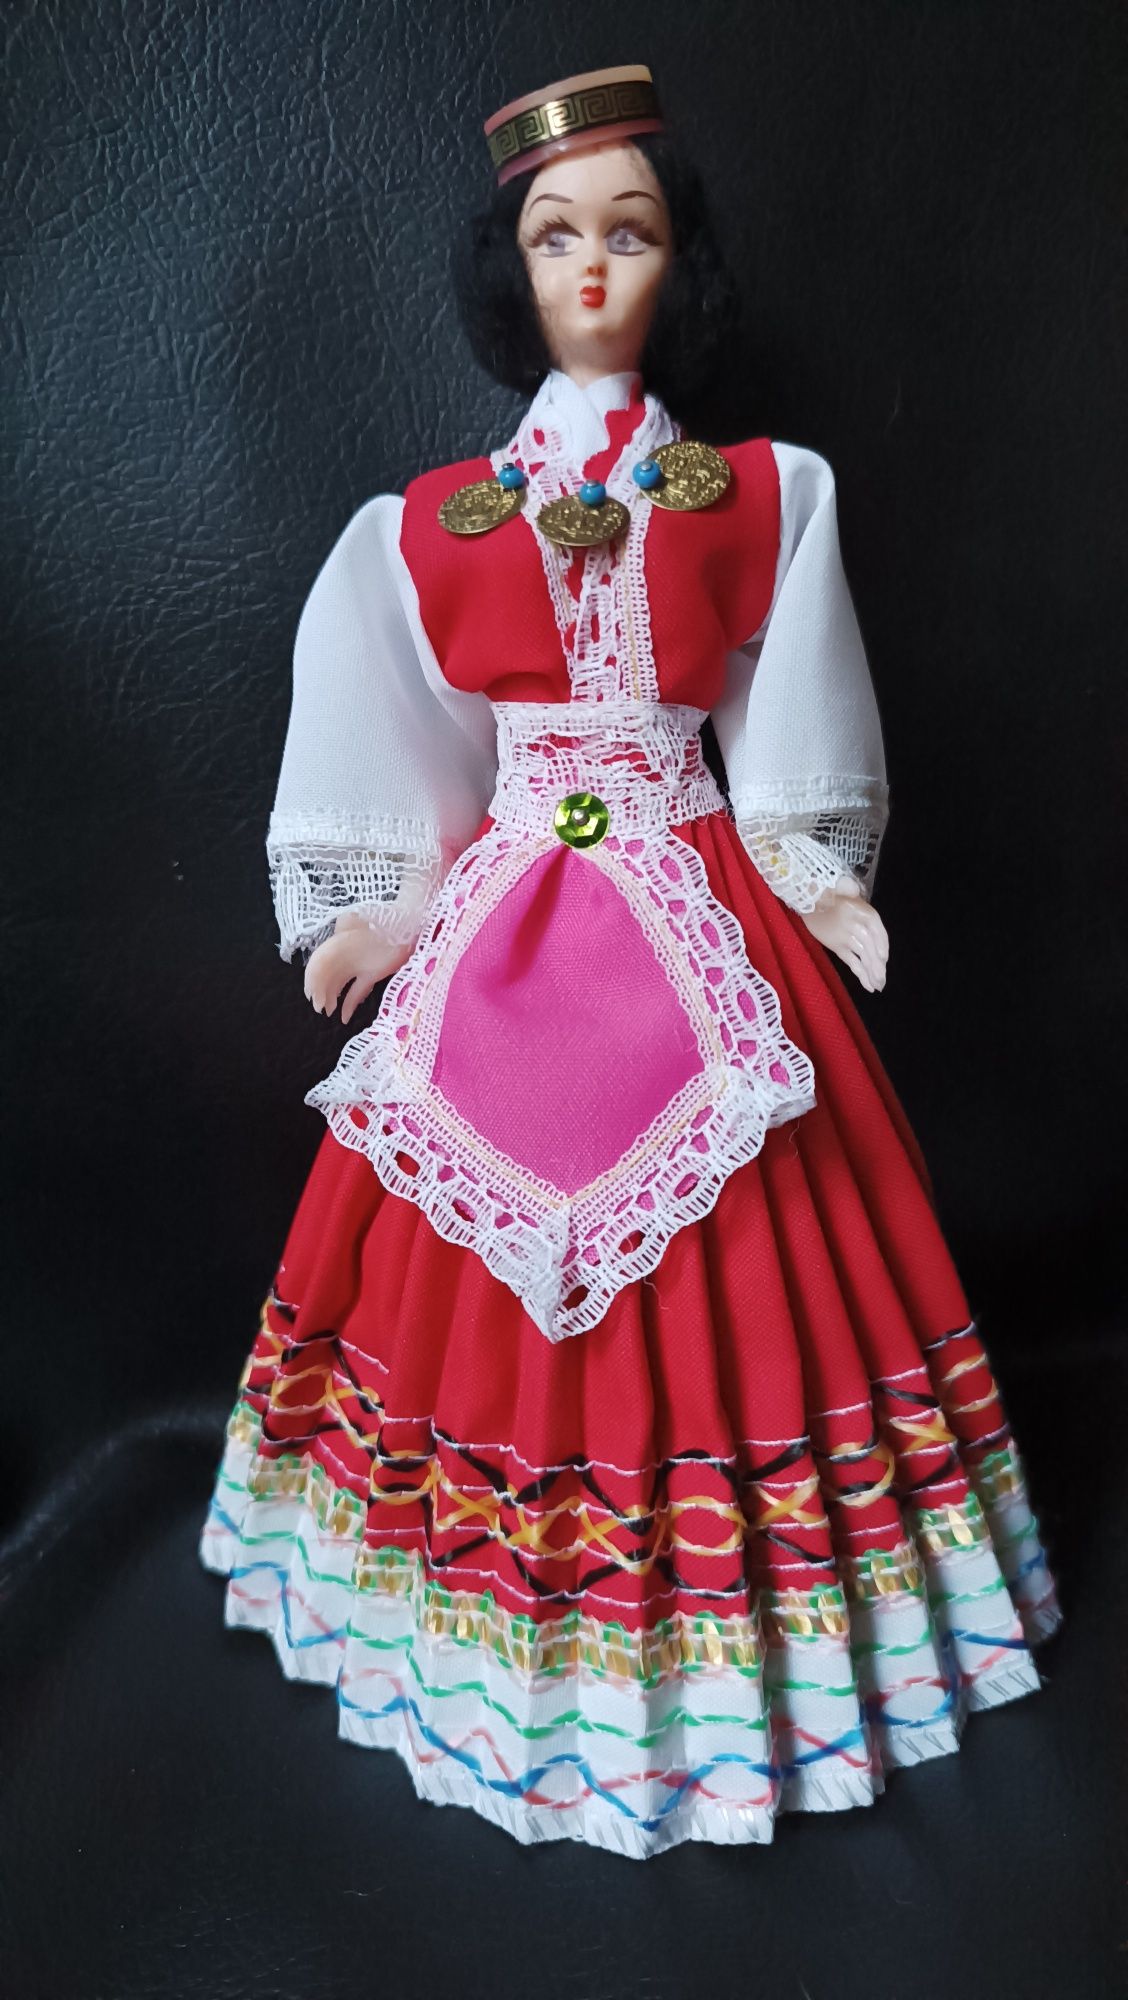 Kolekcjonerska lalka w tradycyjnym stroju greckim